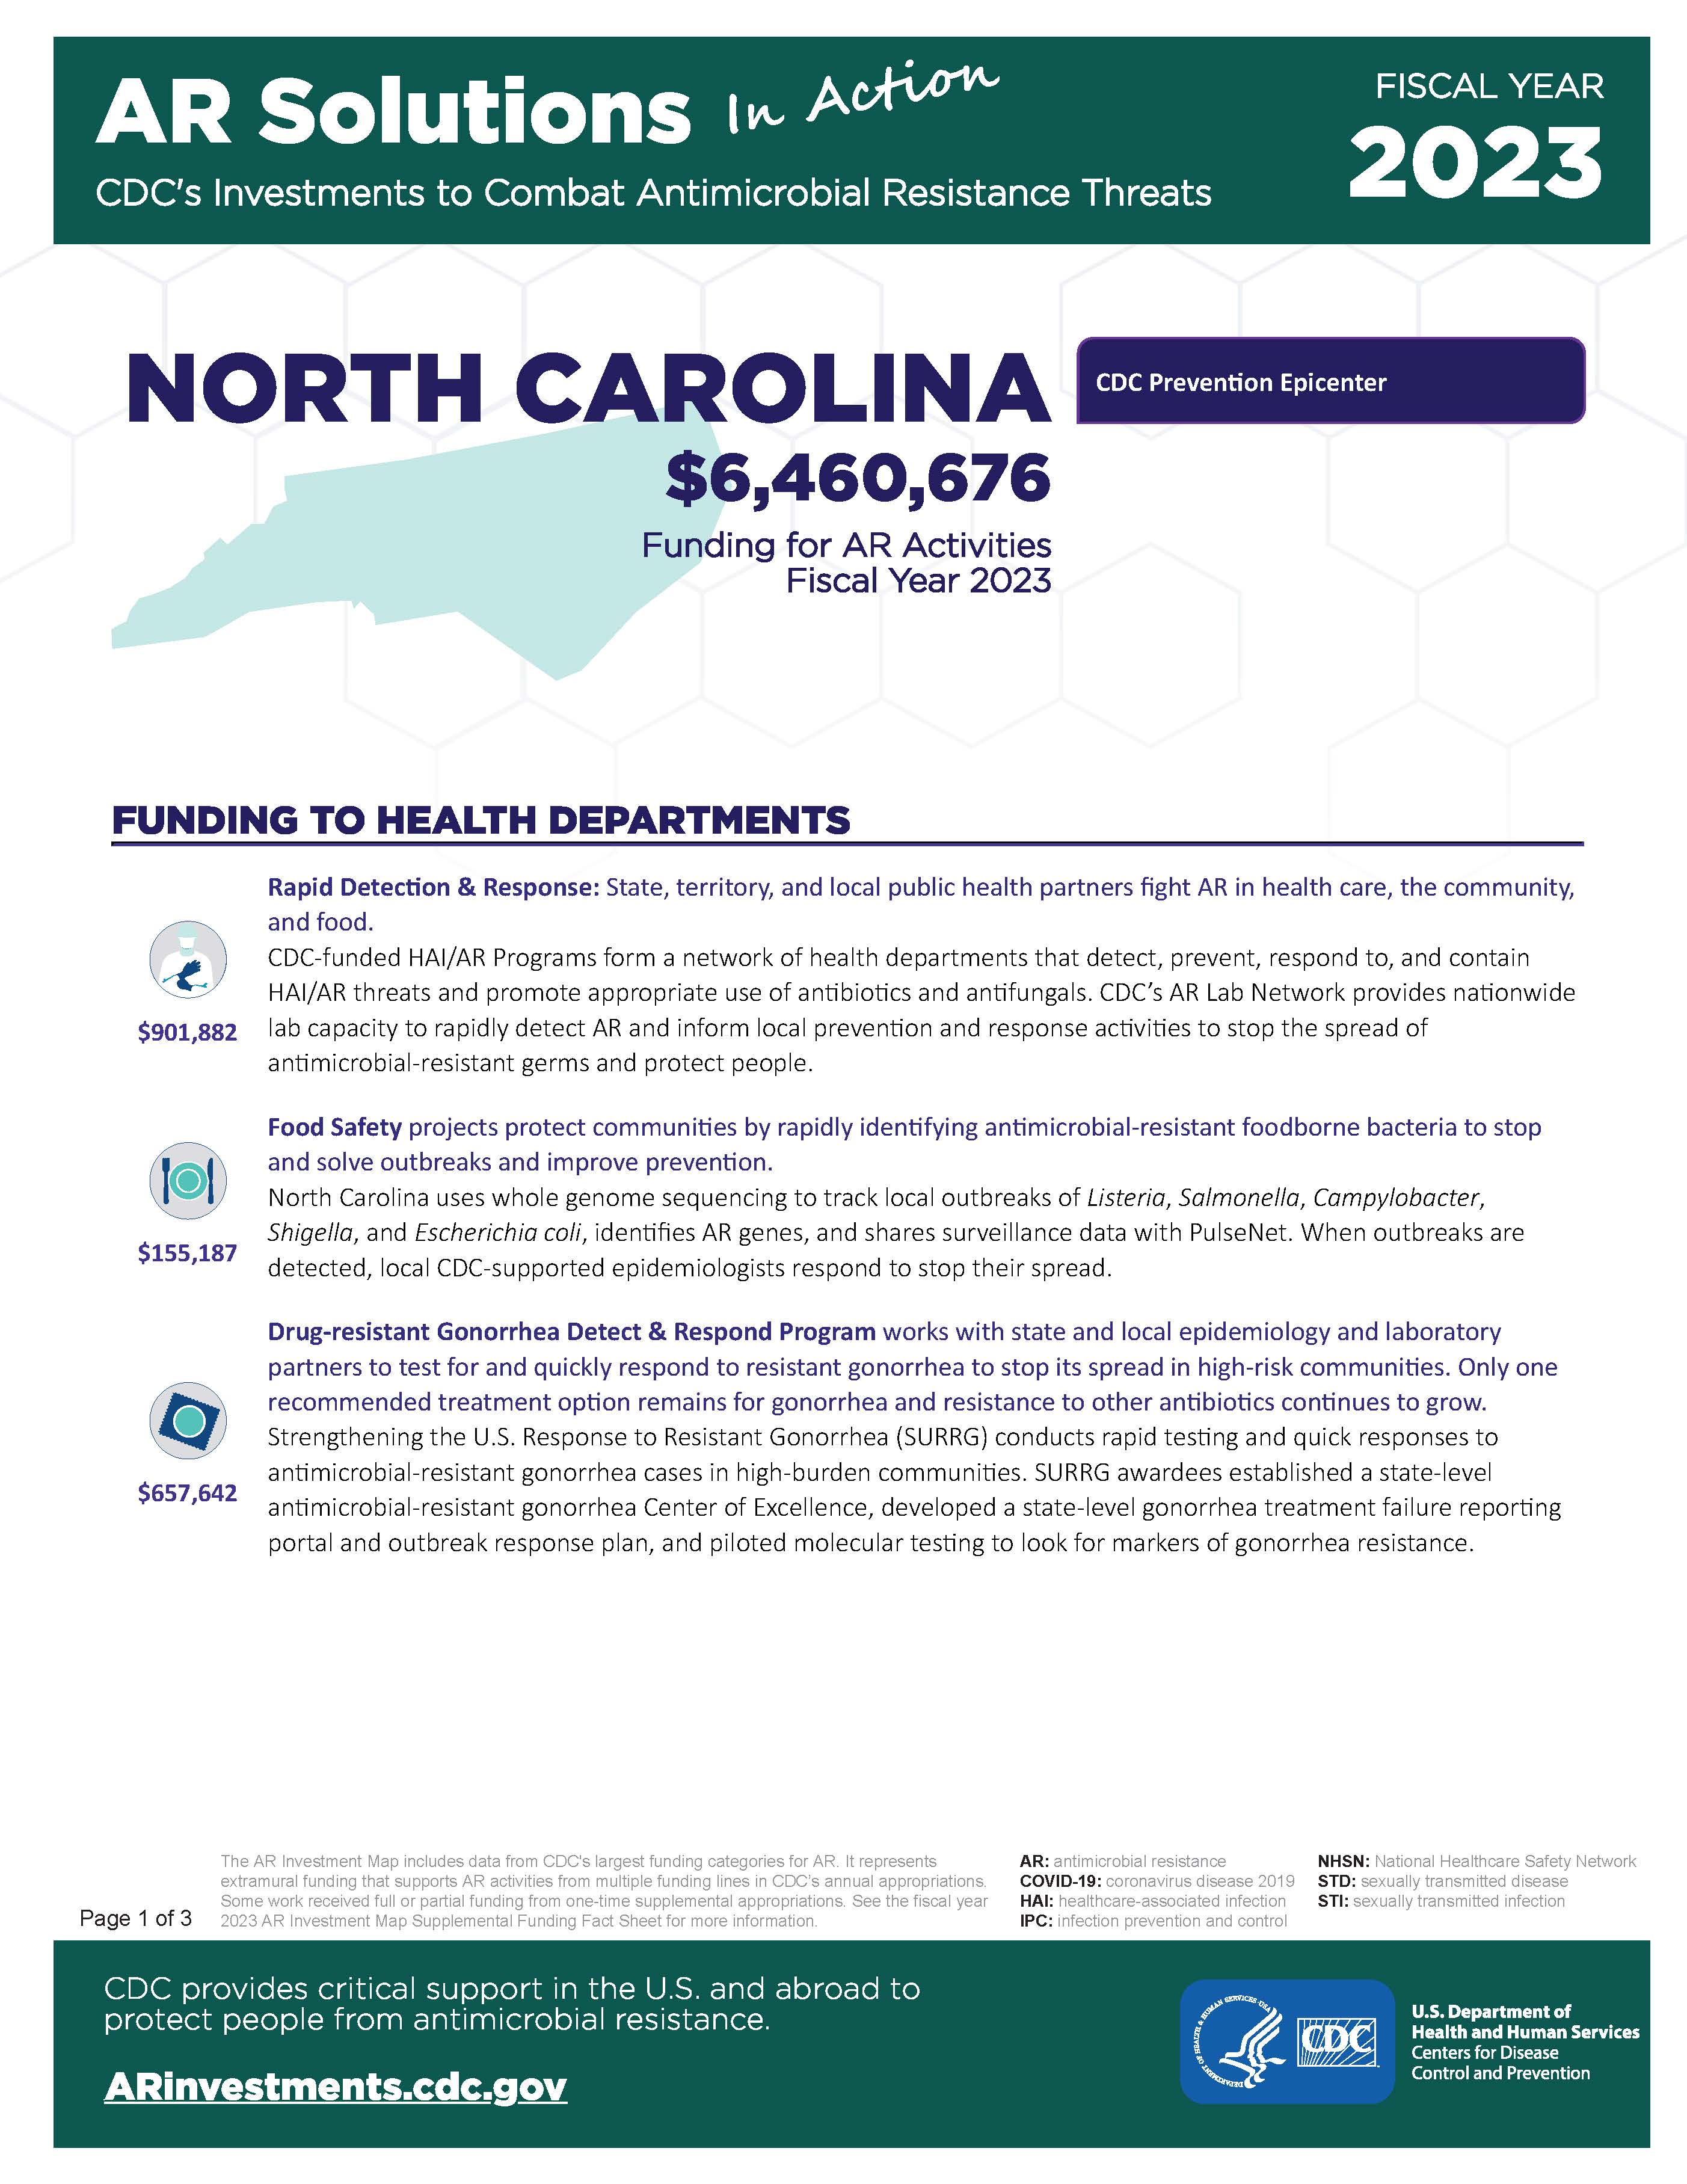 View Factsheet for North Carolina